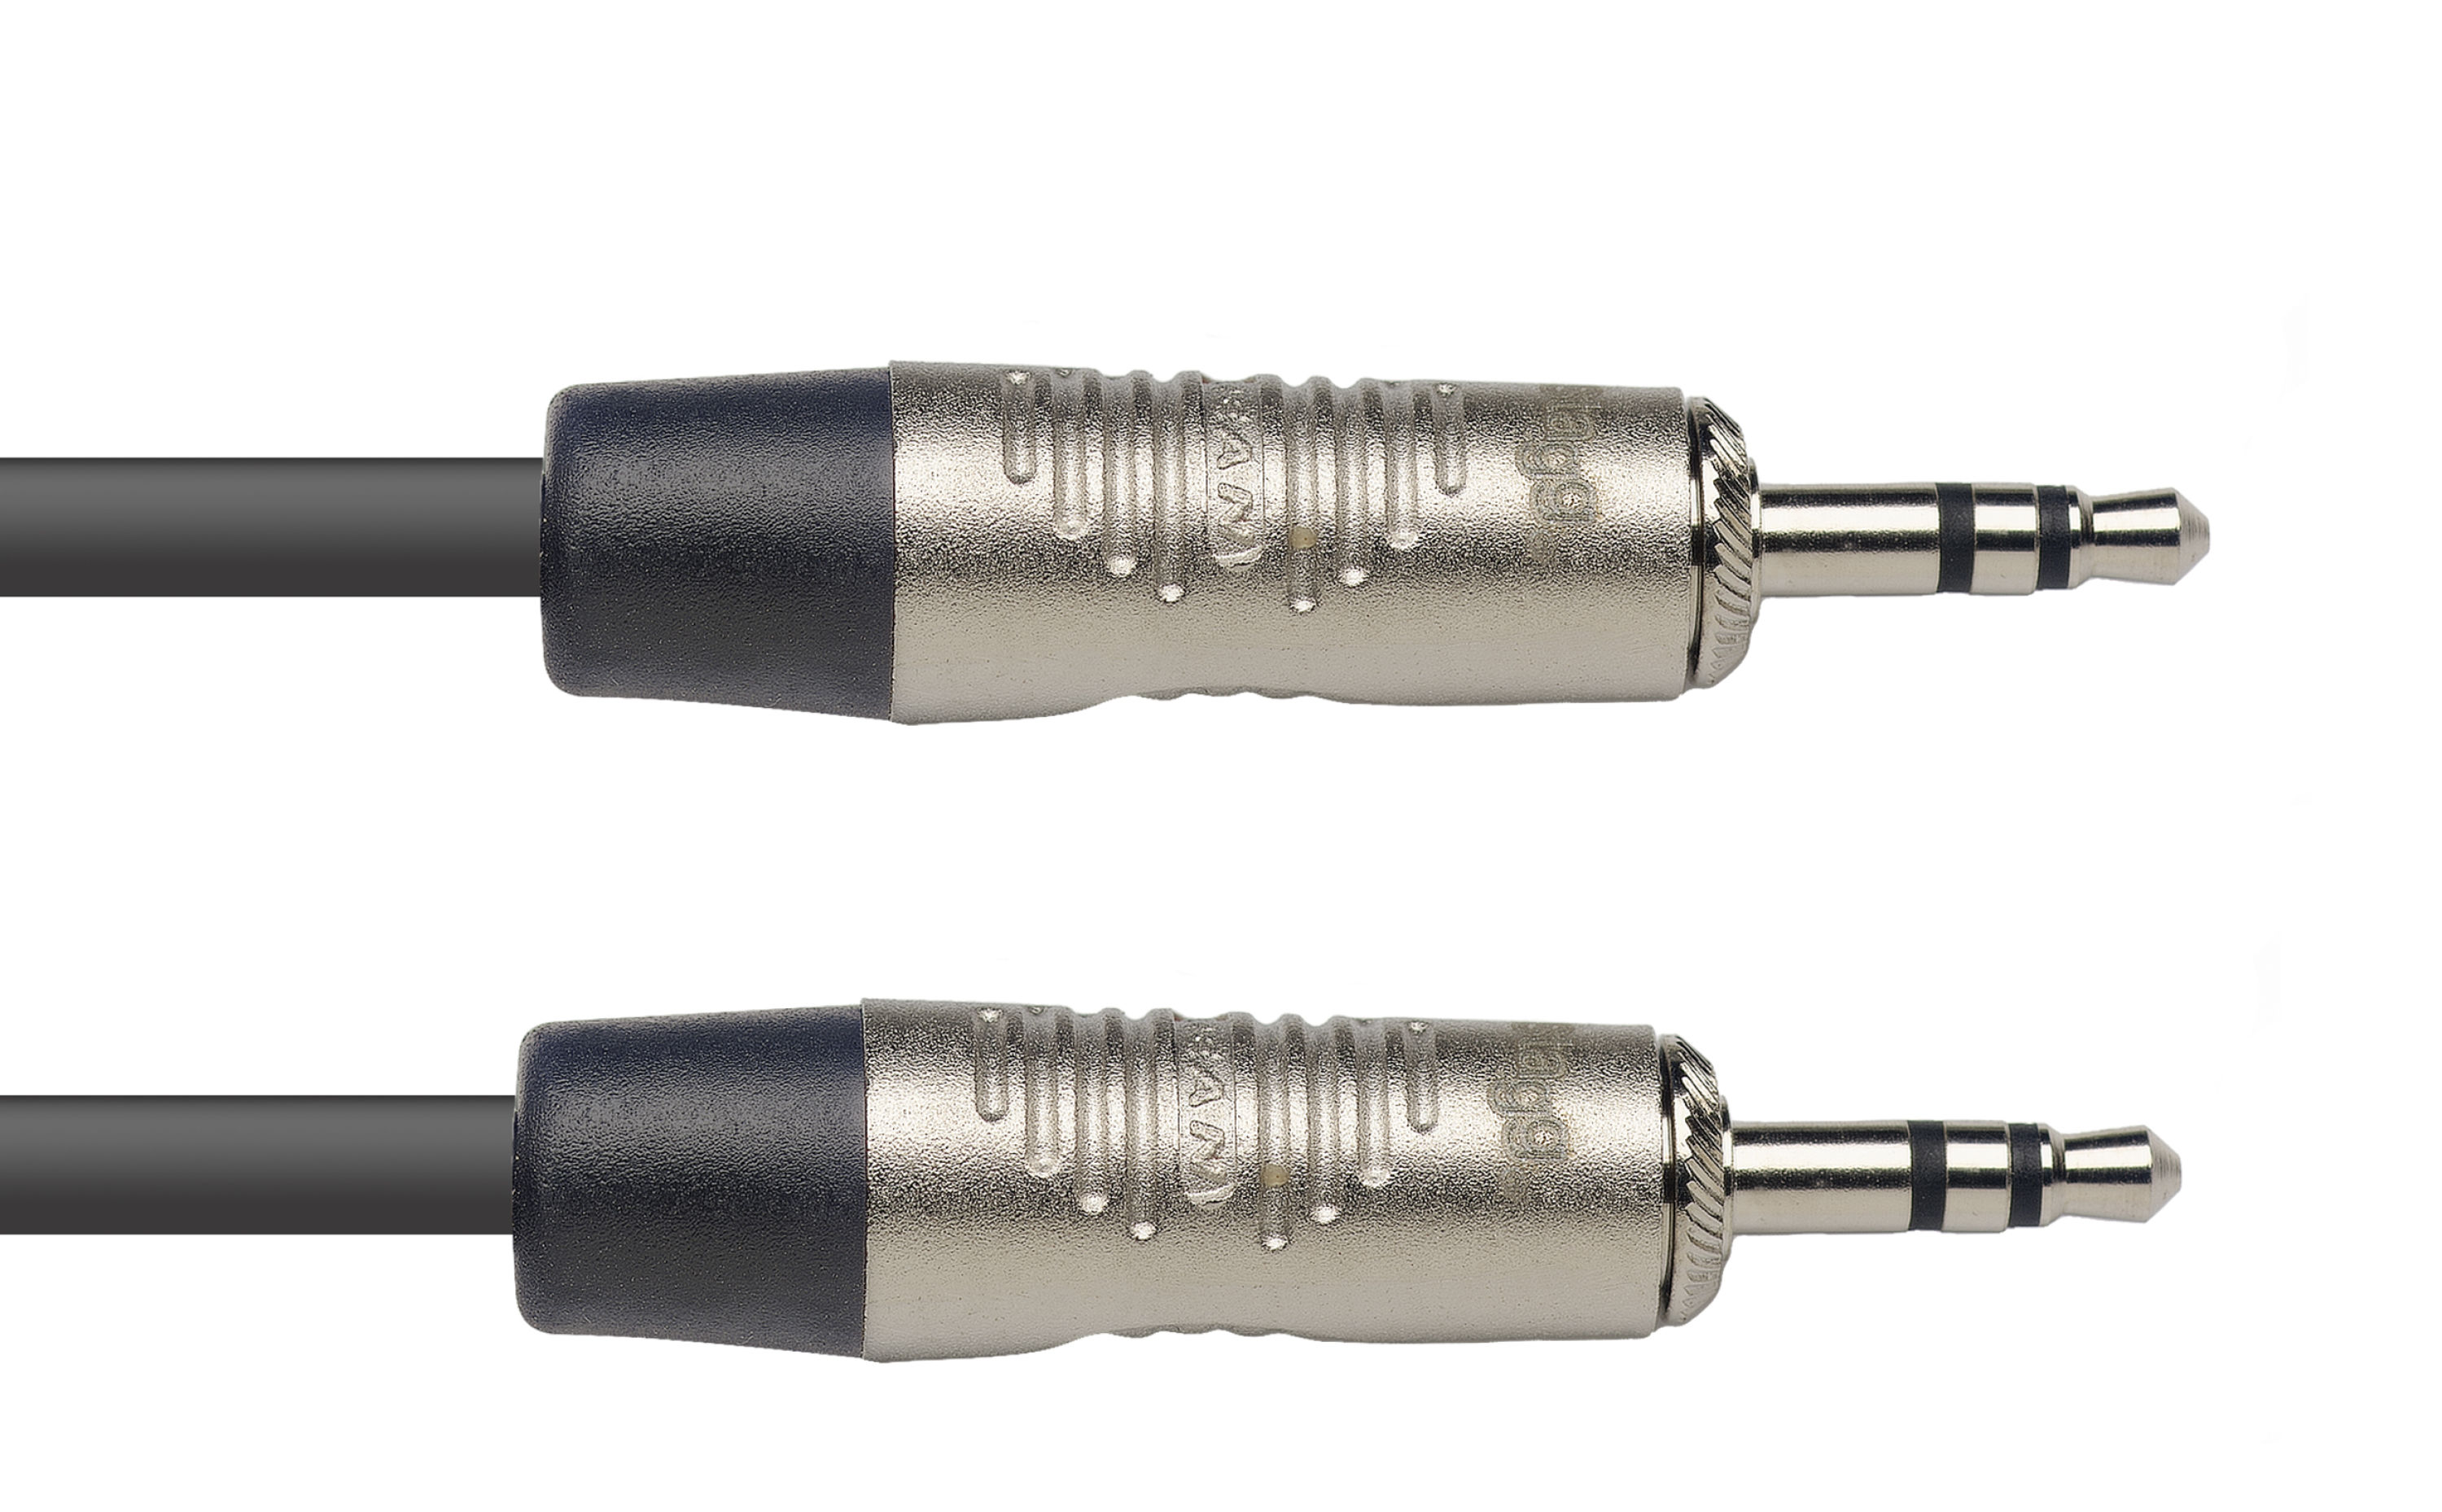 Stagg NAC3MPSR, propojovací kabel Jack 3,5mm stereo, 3m